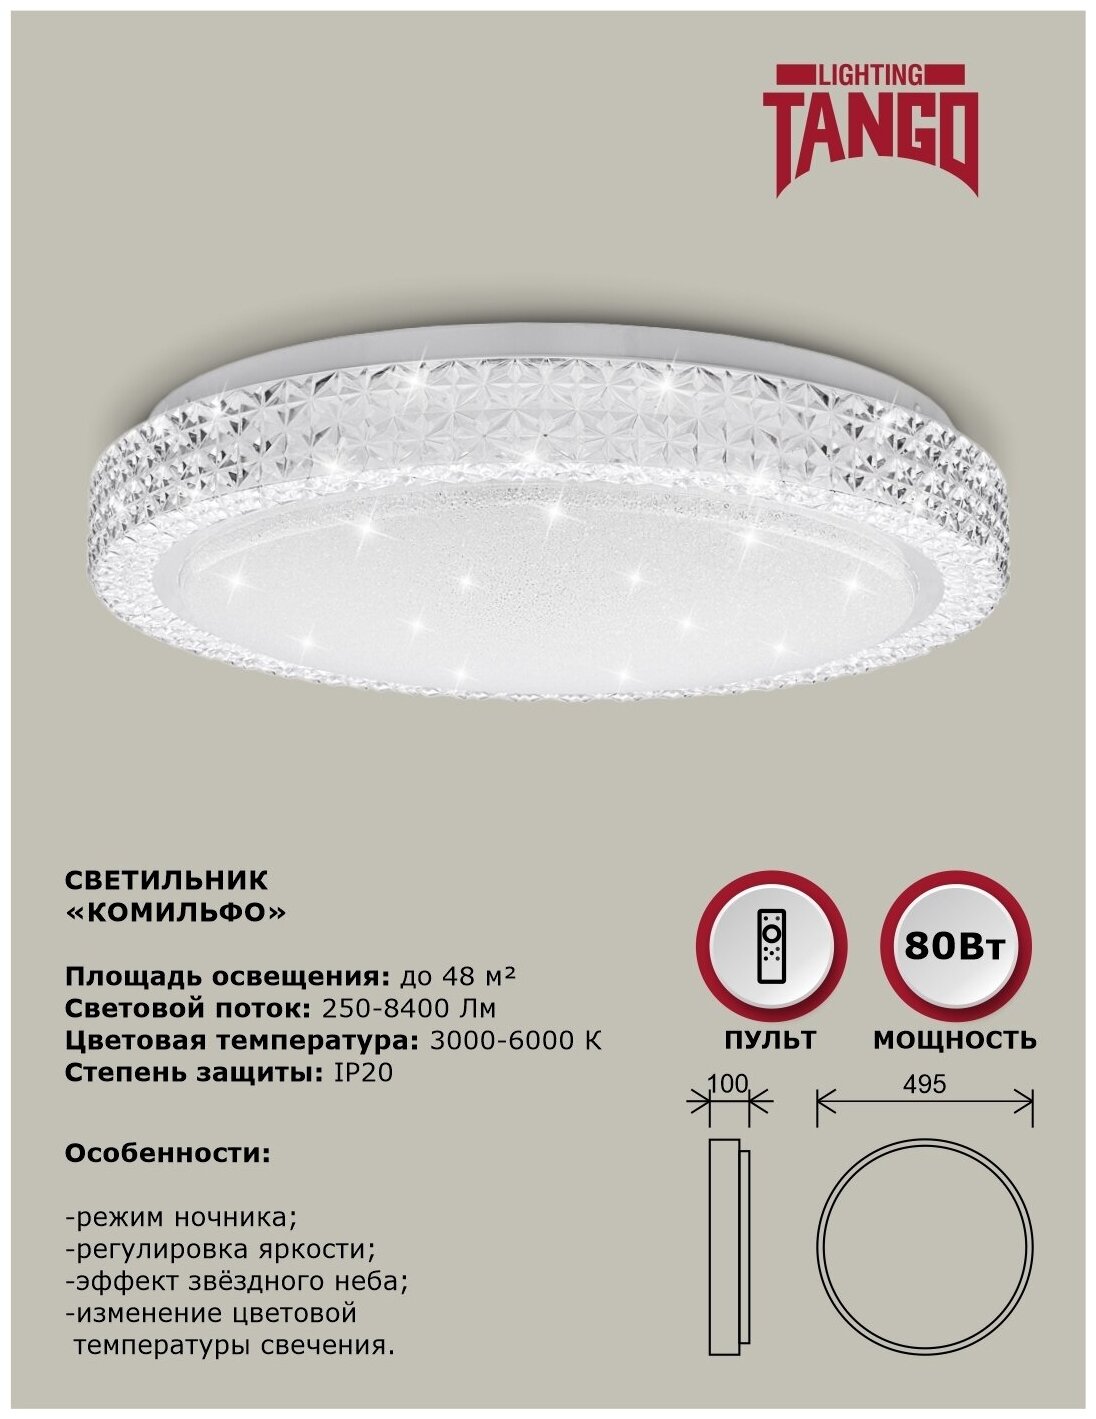 Cветильник светодиодный настенно-потолочный "комильфо" 80Вт (495*100,основание 450 мм) с ИК ДУ TANGO россия LED - фотография № 2